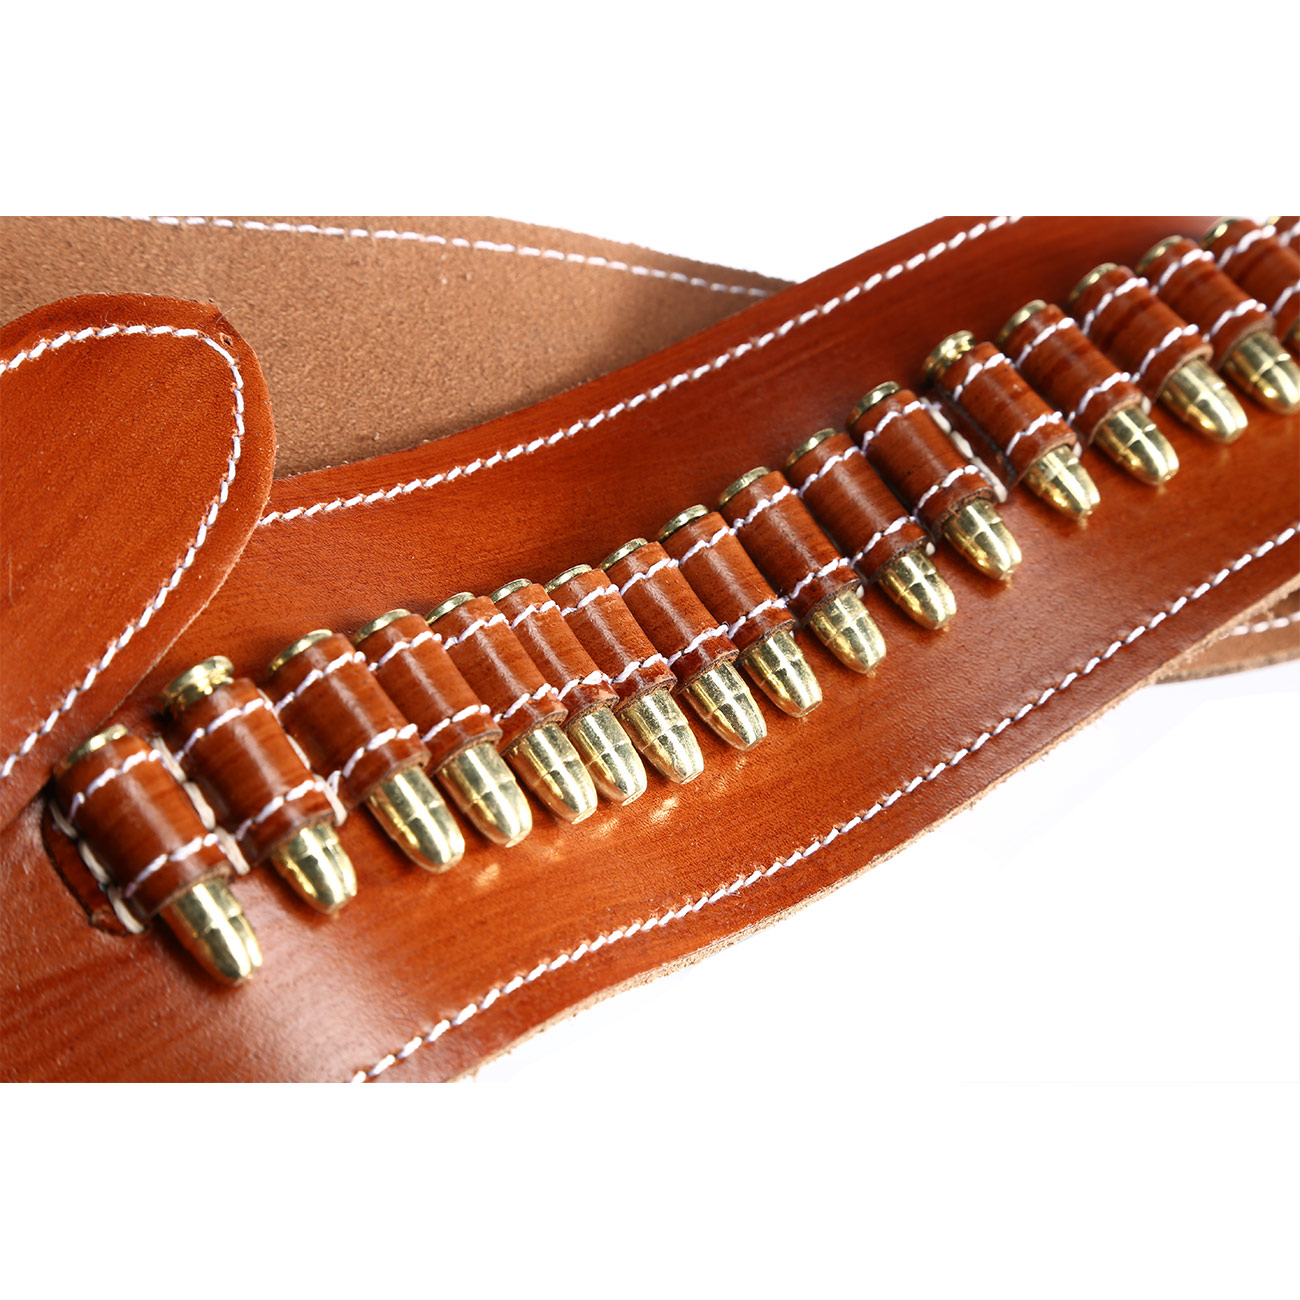 Coltgürtel aus Leder mit Sheriffstern für 1 Colt inkl. 24 Dekopatronen braun Bild 1